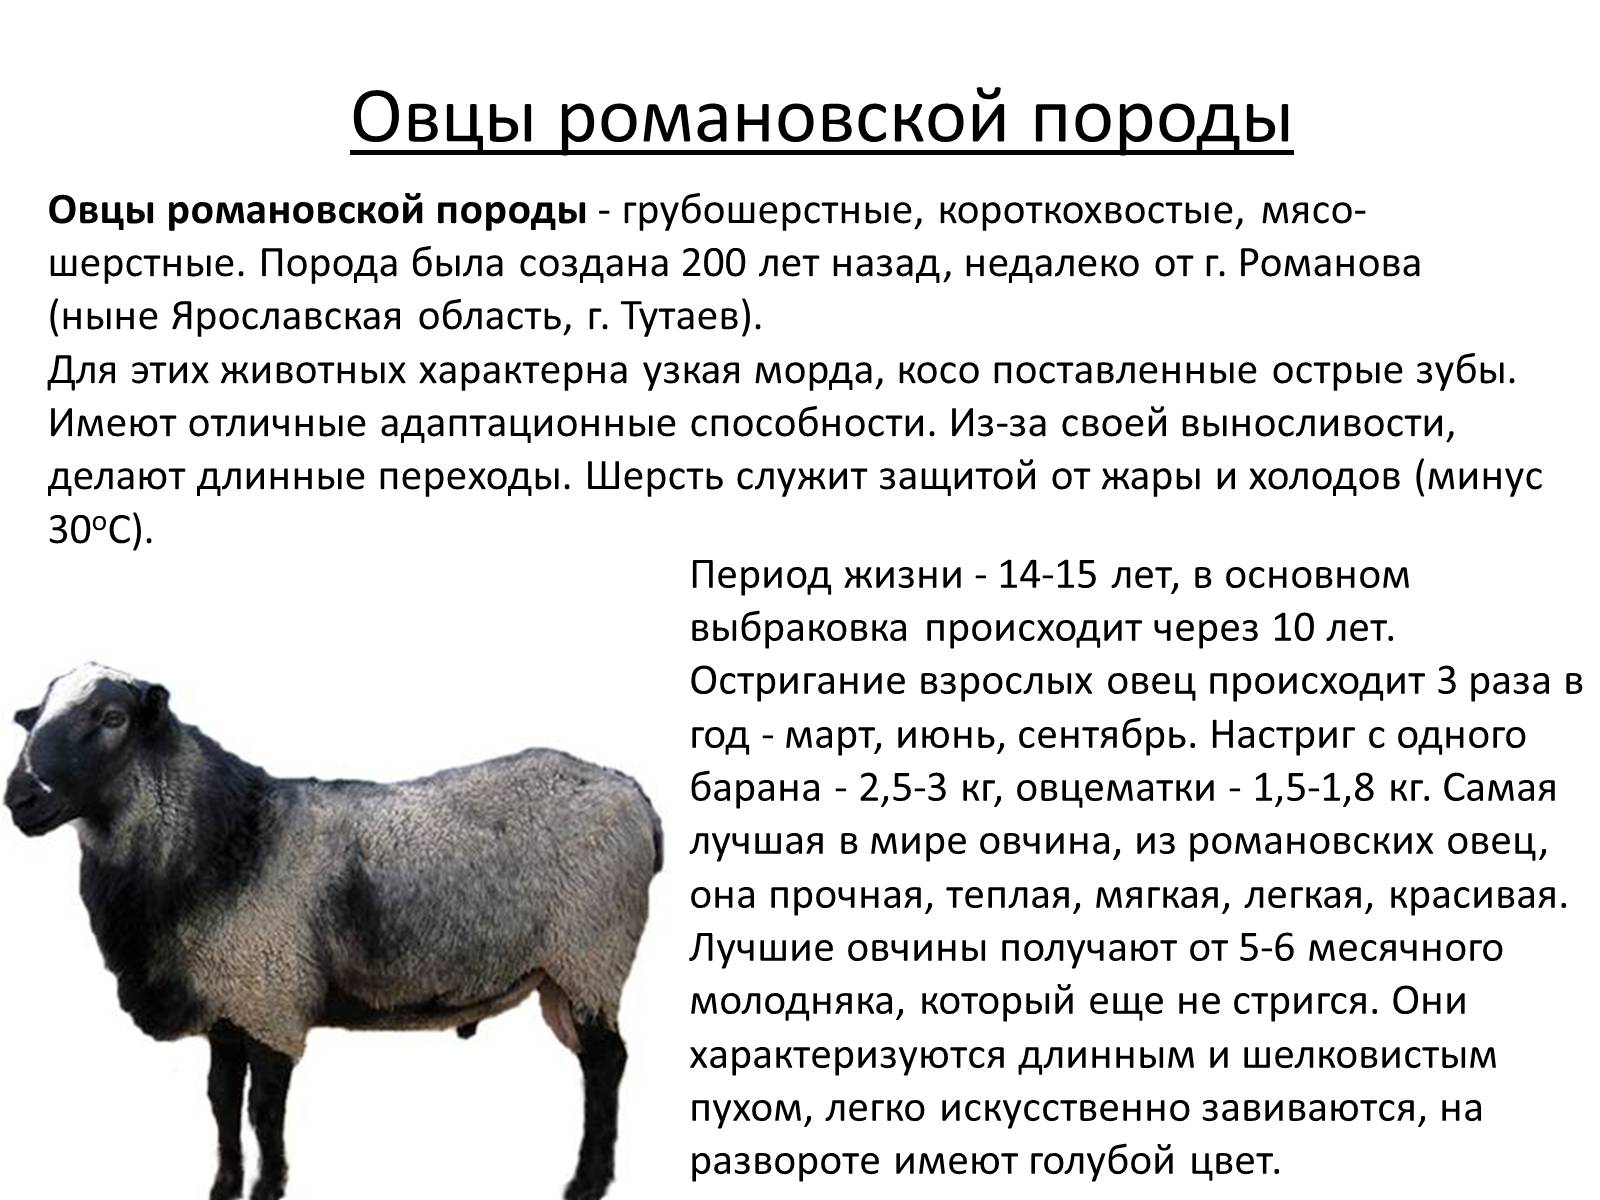 Сколько вес барана. Грубошерстные породы овец Романовская. Романовская порода овец вес. Романовская порода овец скрещивание. Романовская порода овец 3d.